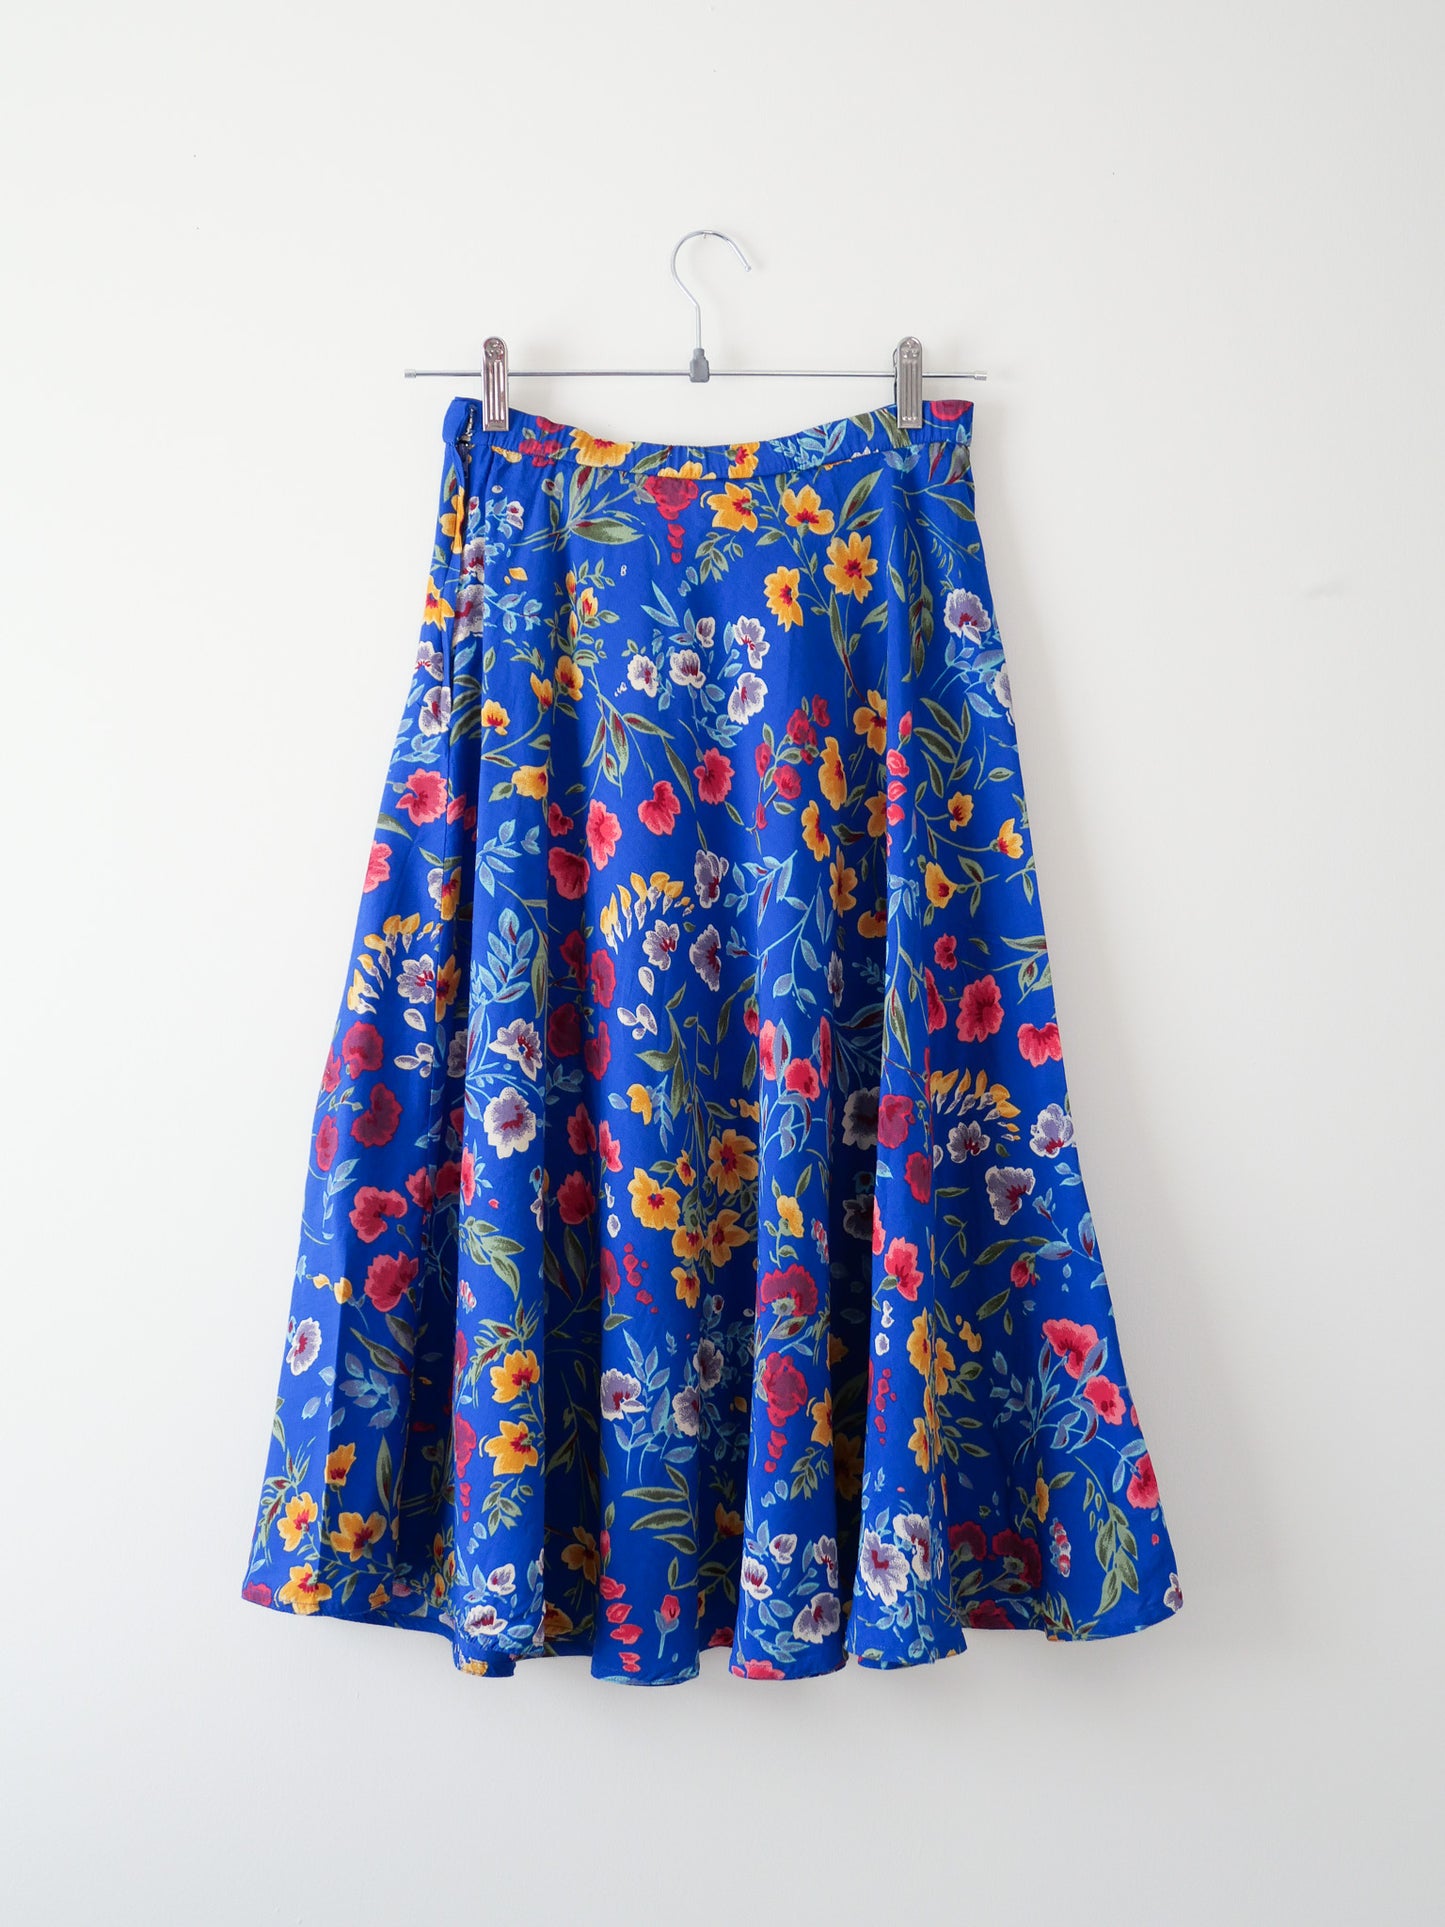 Vintage Blue Floral Skirt, Size S